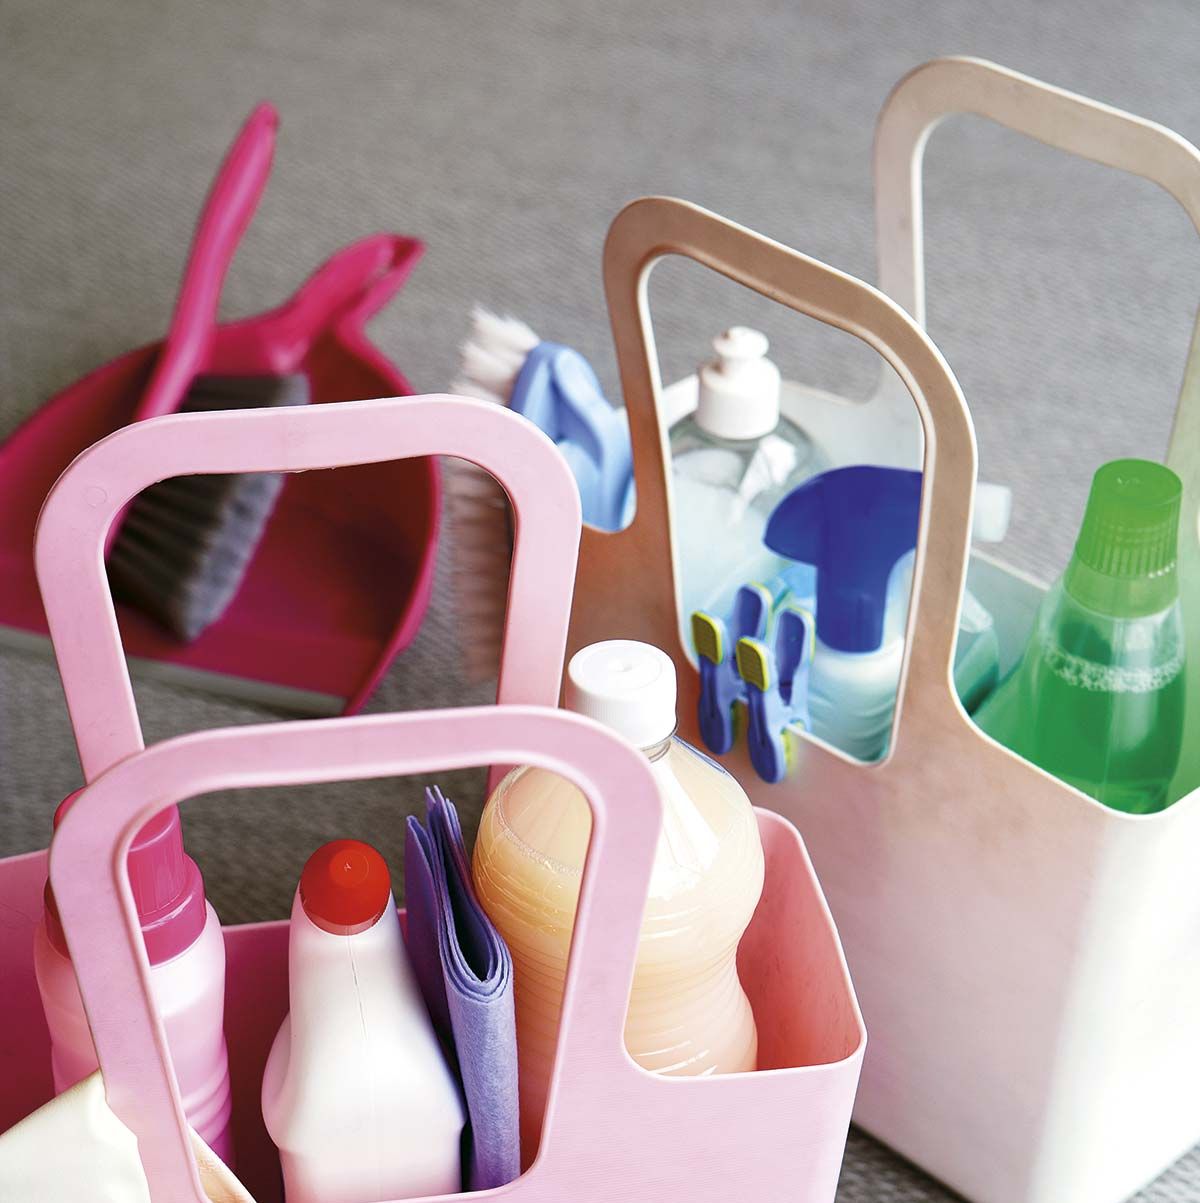 Orden en el baño: consejos para organizar y guardar los productos - Foto 1